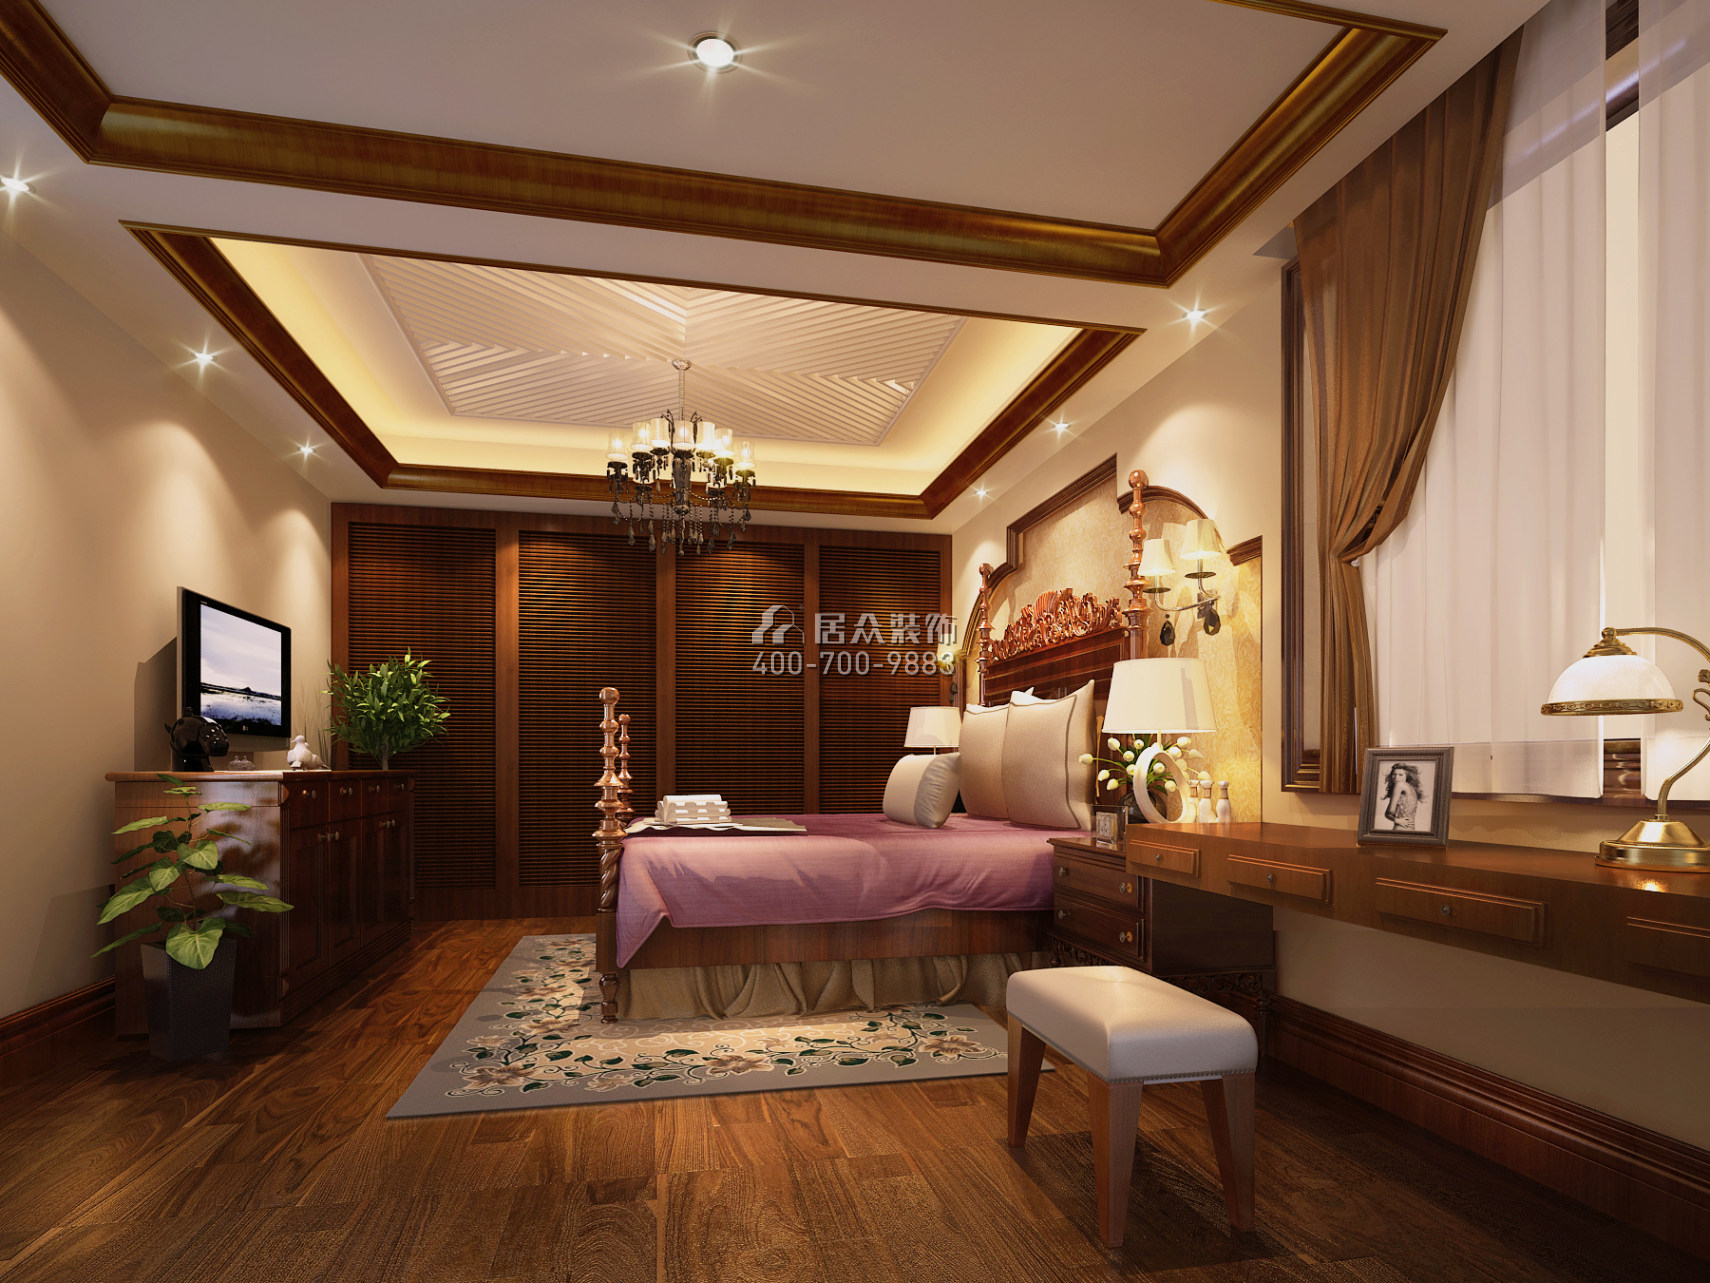 保利国际广场260平方米美式风格平层户型卧室装修效果图